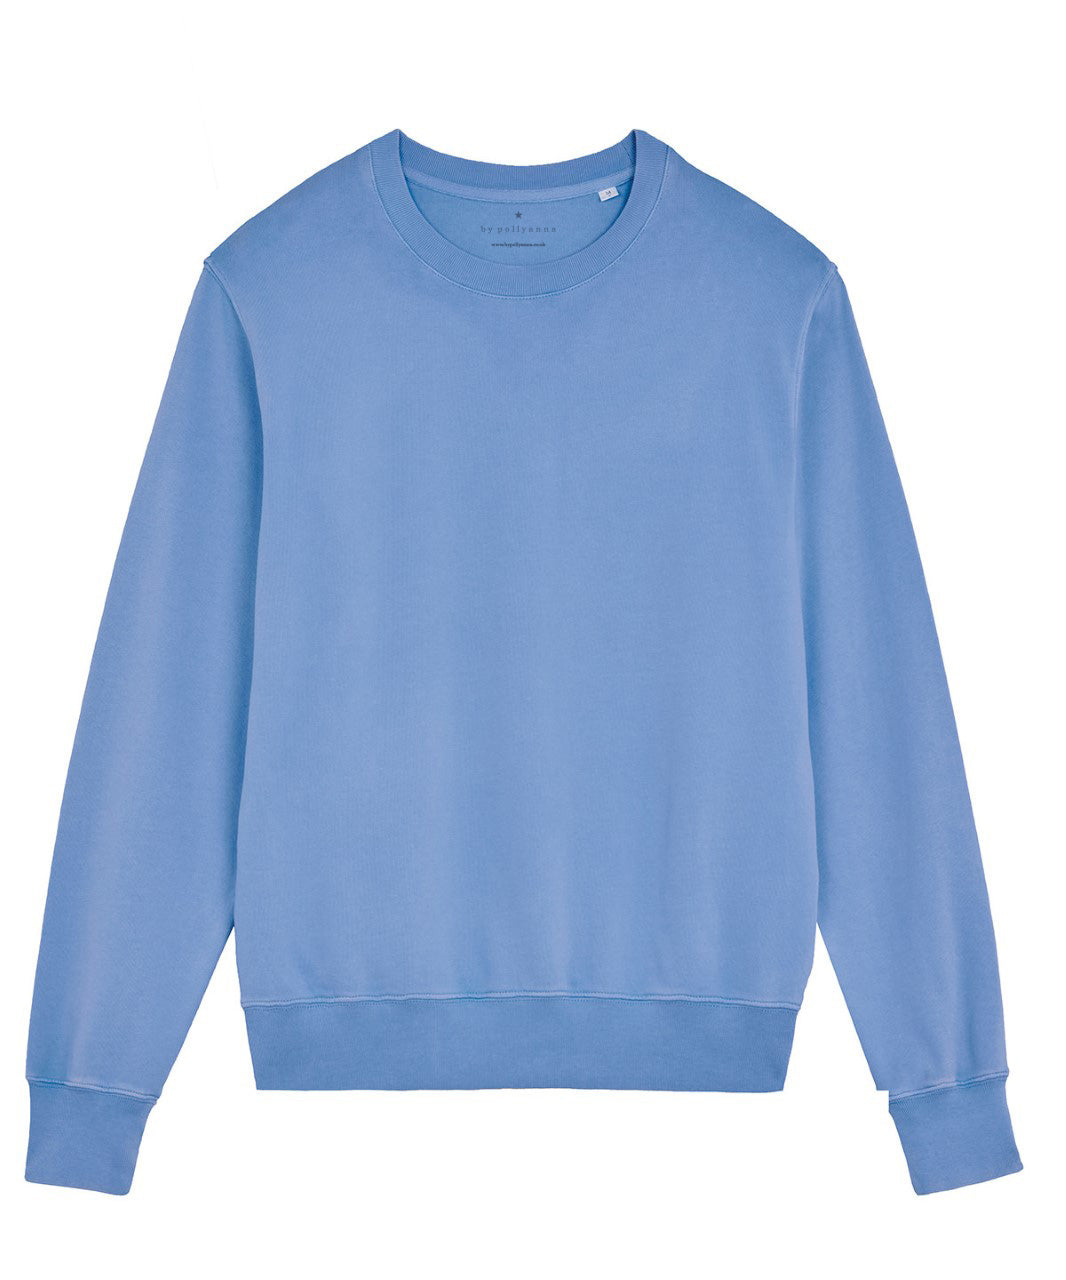 Cornflower Blue Sweatshirt - RELAXED FIT